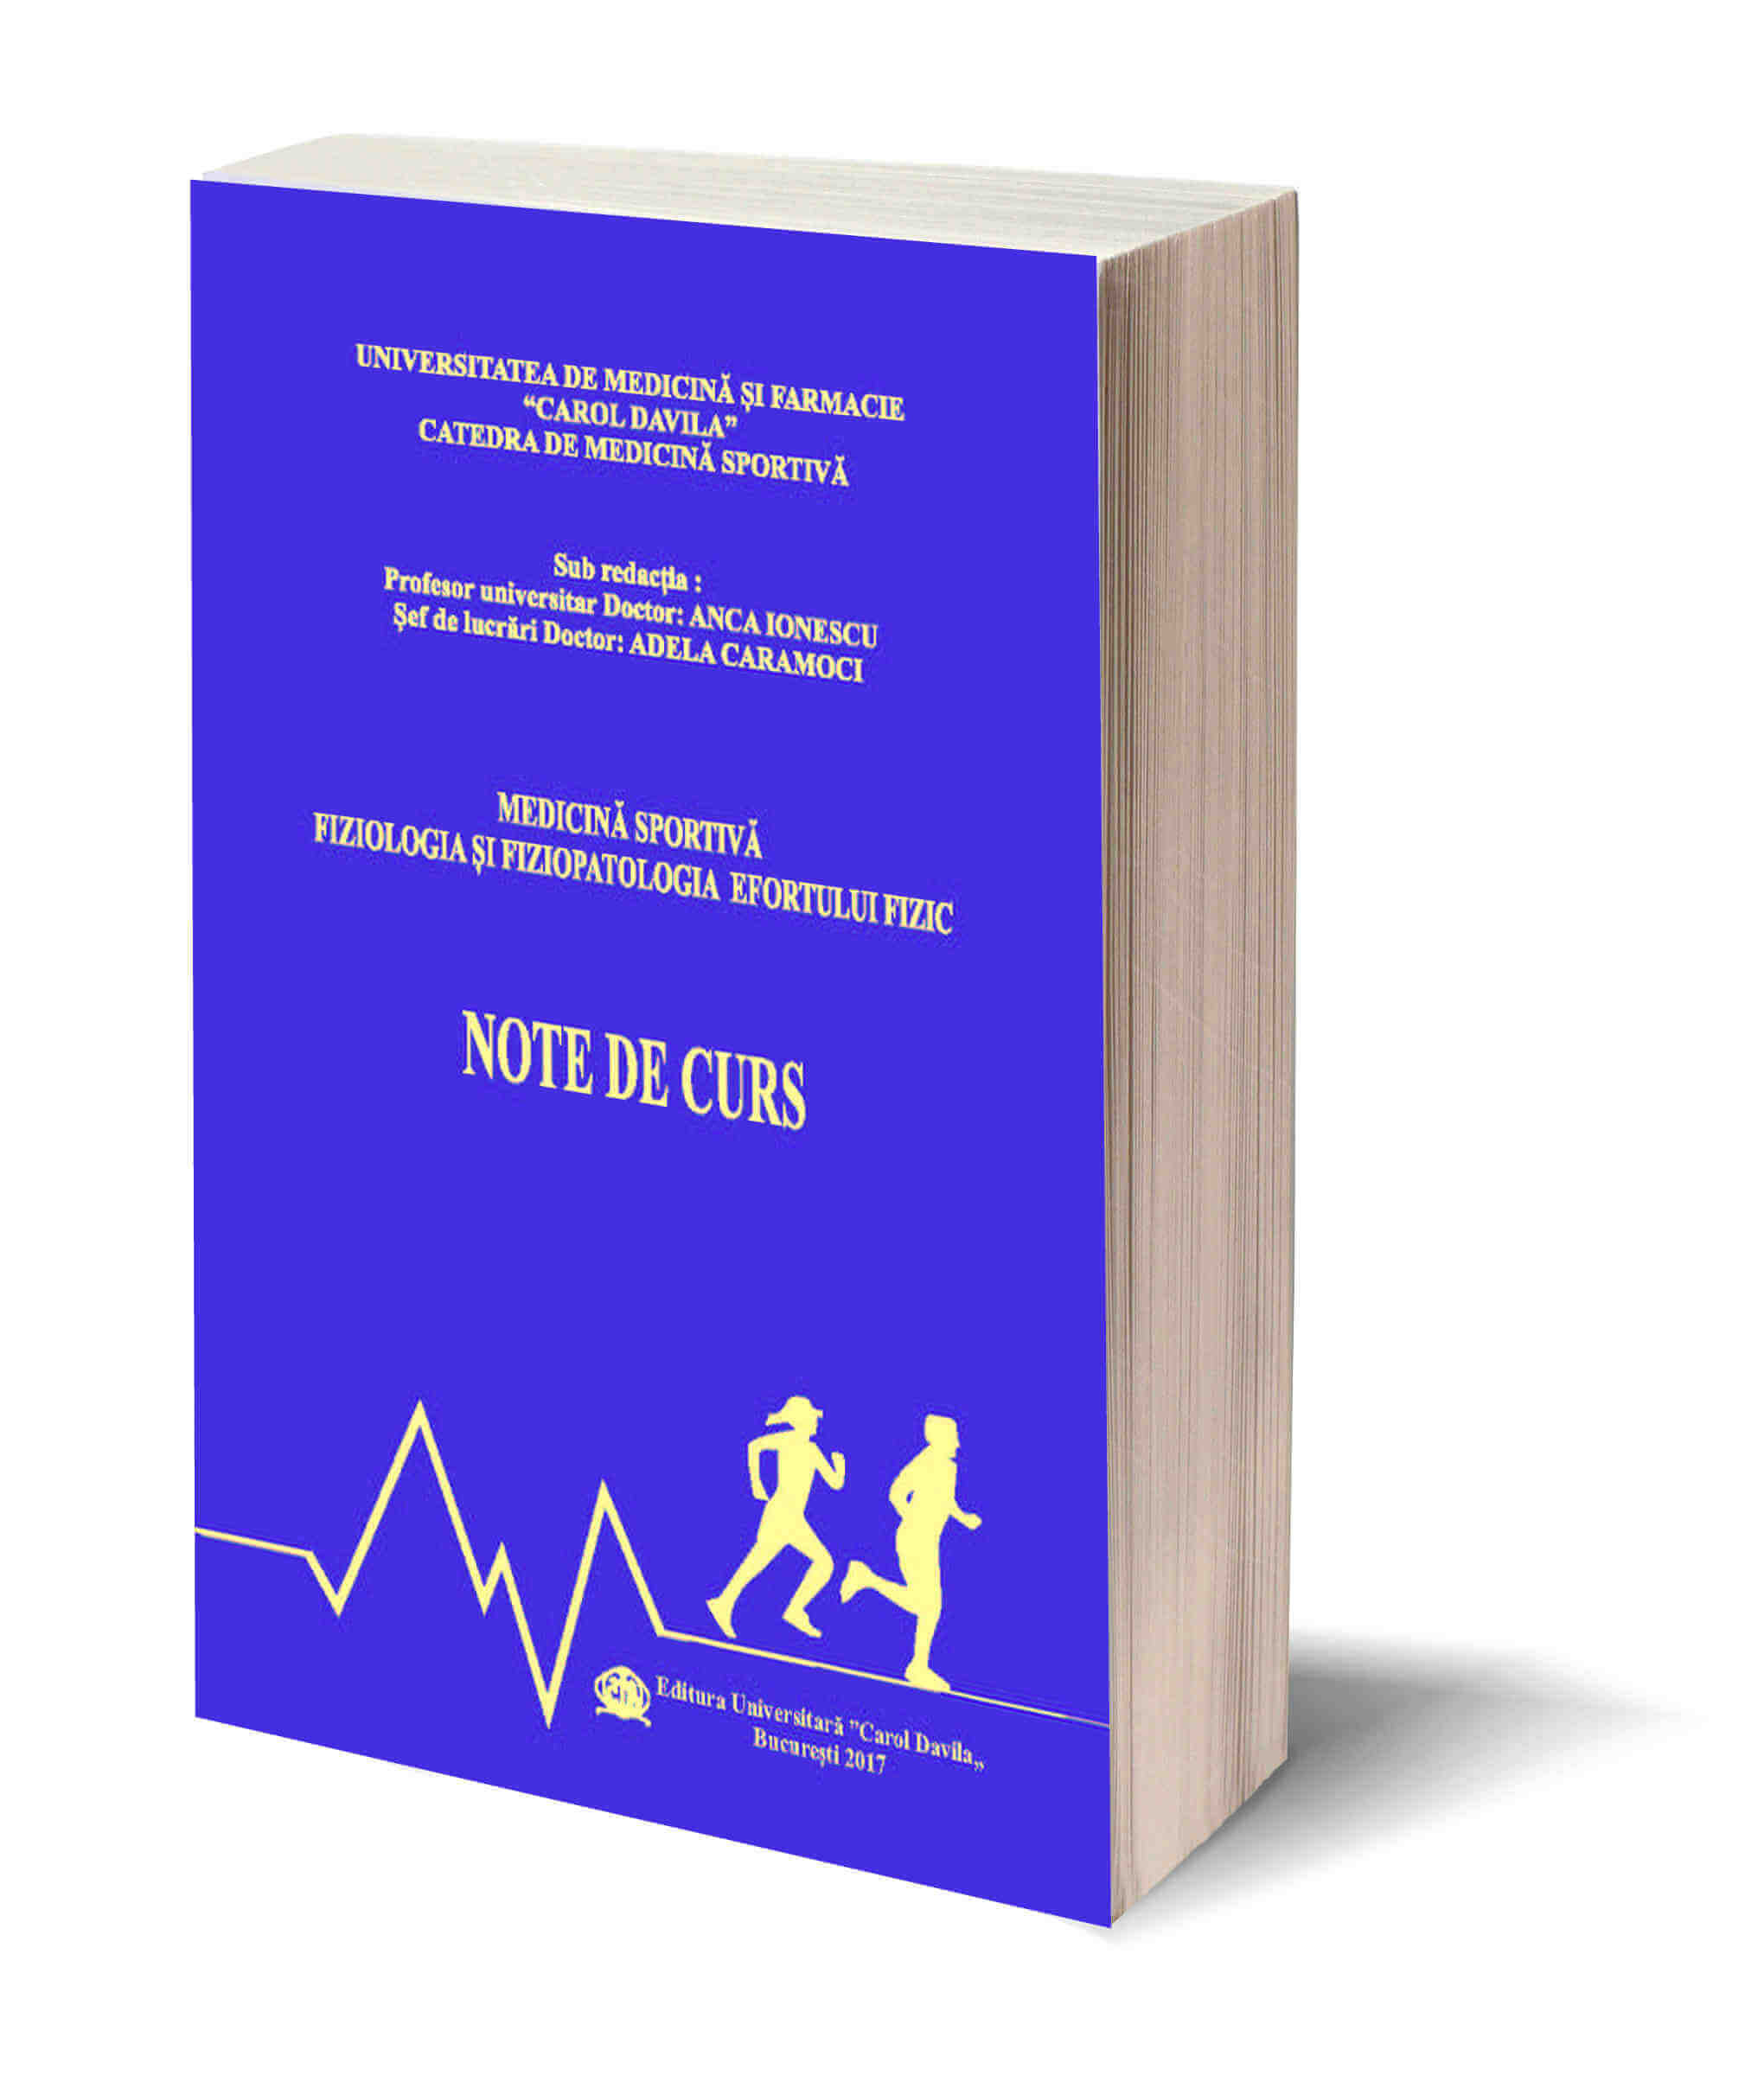 Medicina Sportiva Fiziologia si Fiziopatologia Efortului Fizic – Note de Curs